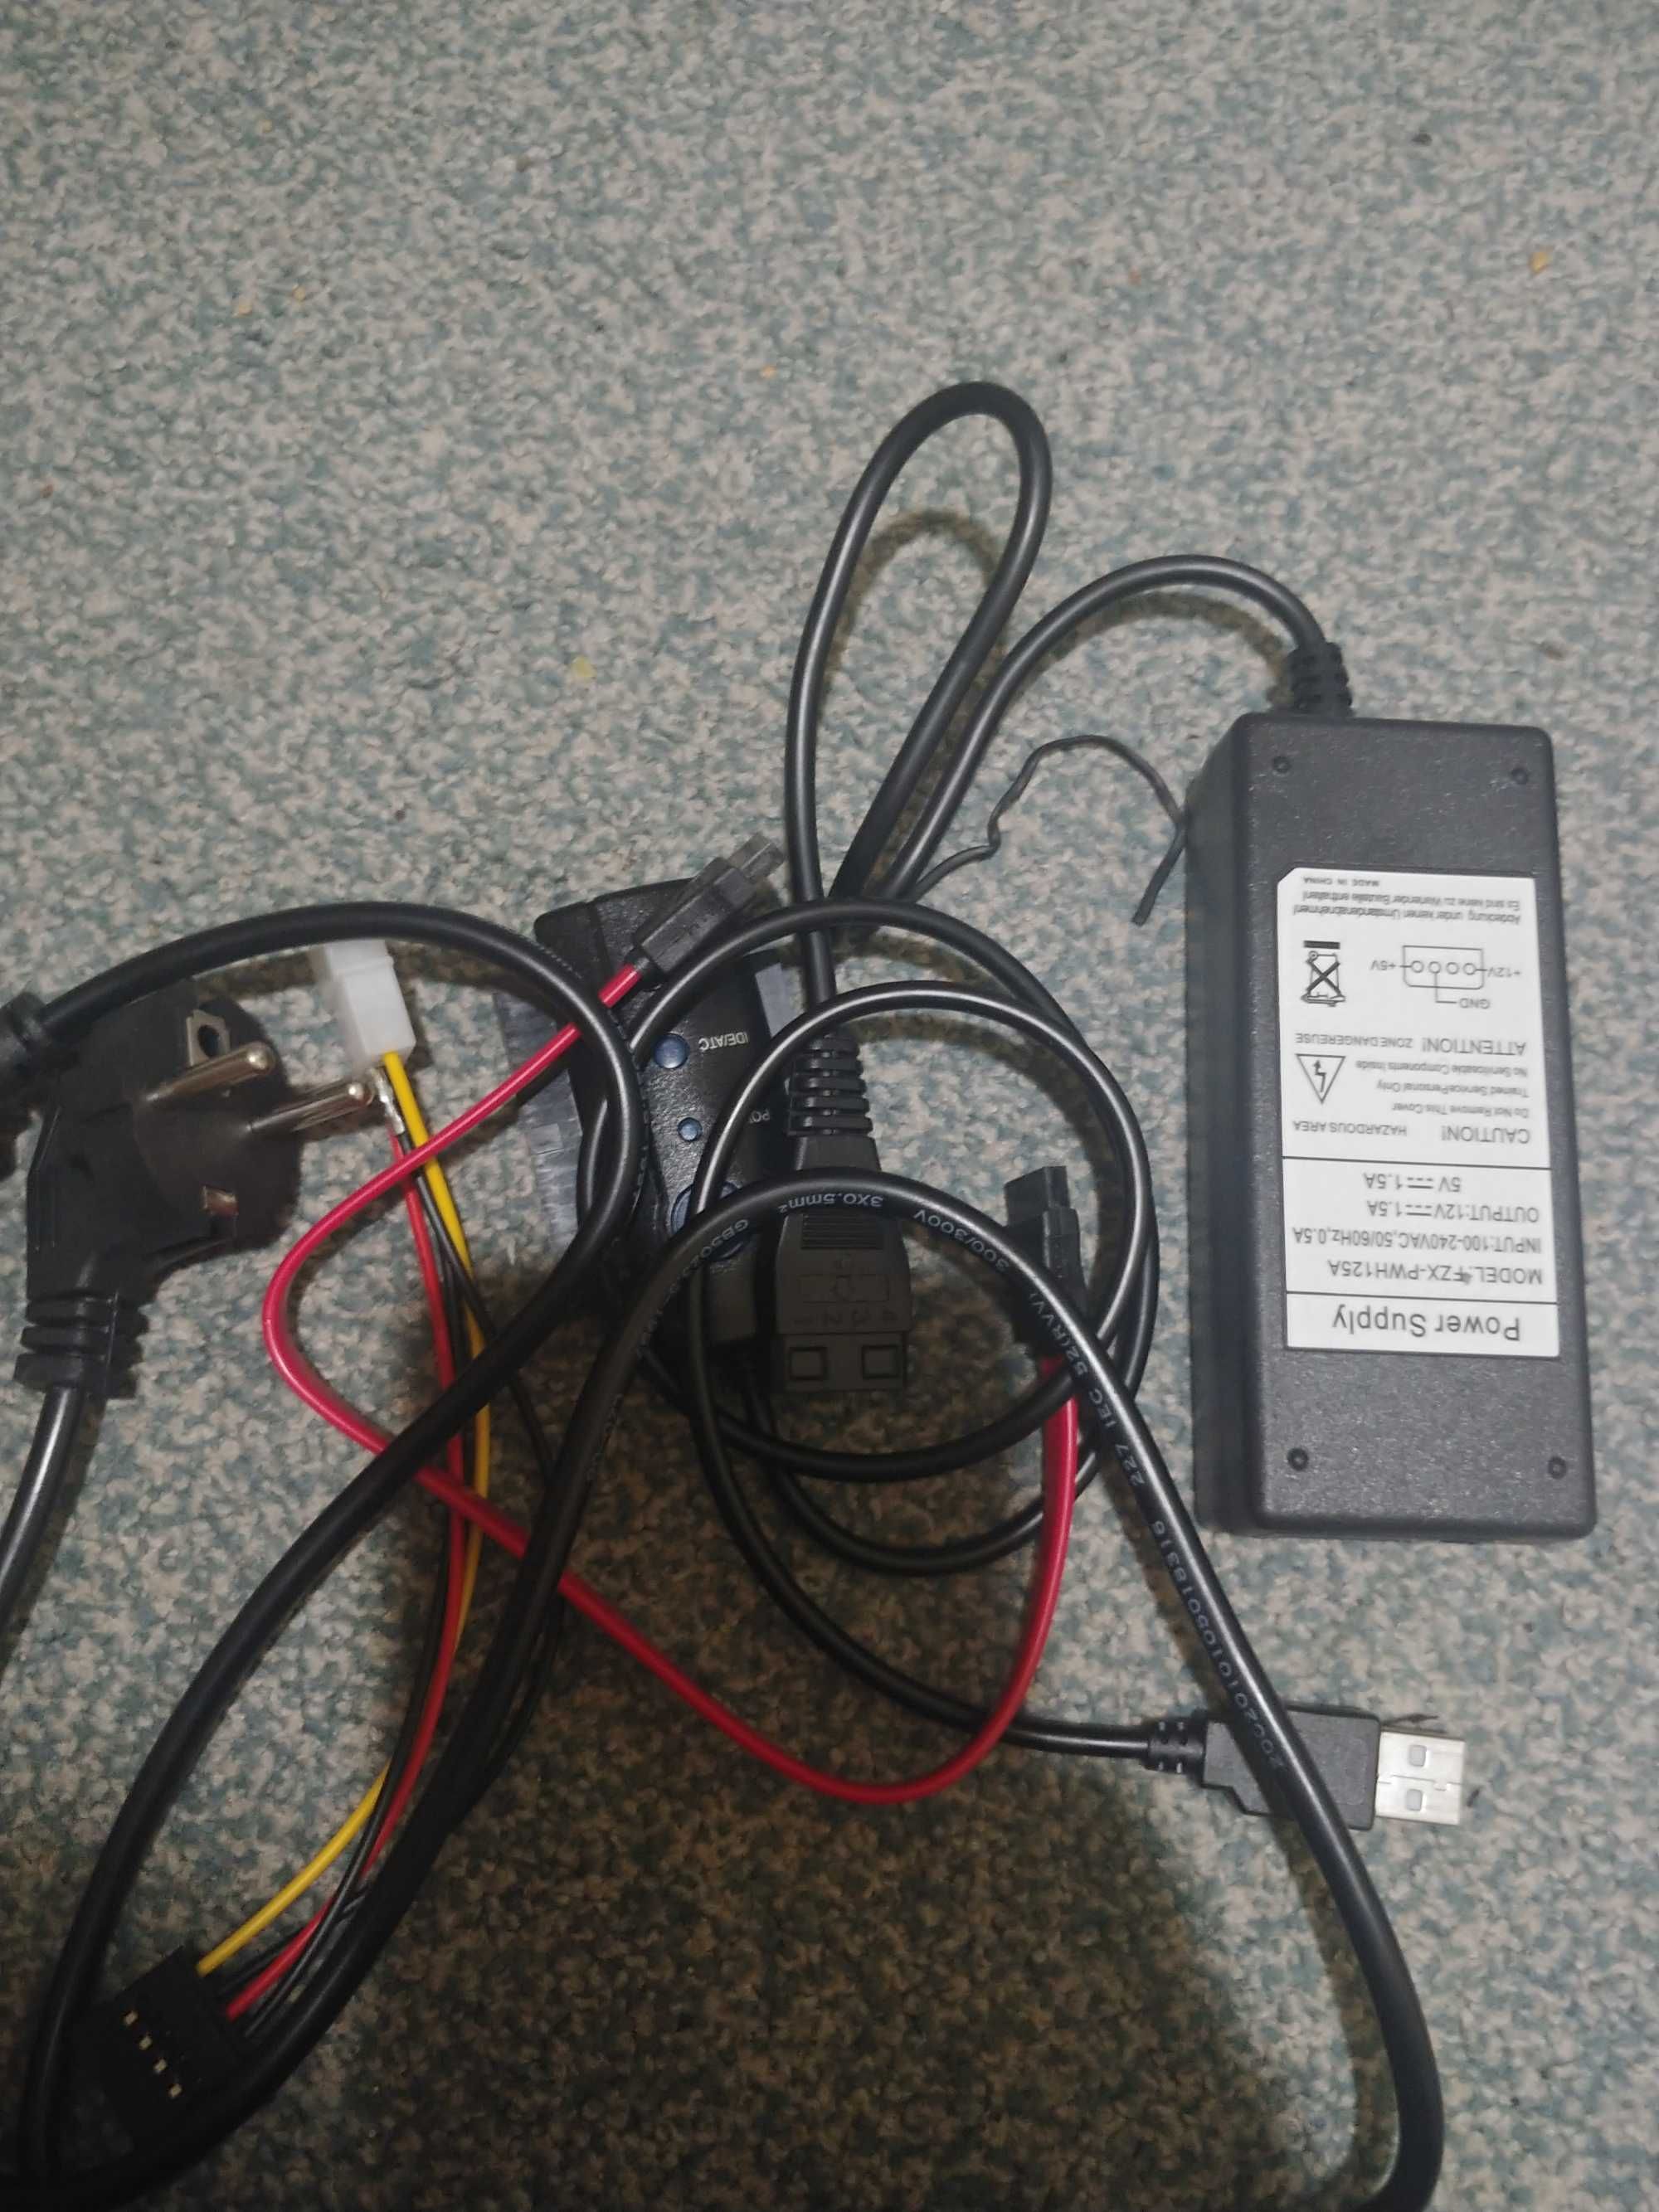 Adapter IDE ATA SATA USB 2.0 z zasilaczem nowy cena sklep 99 zł